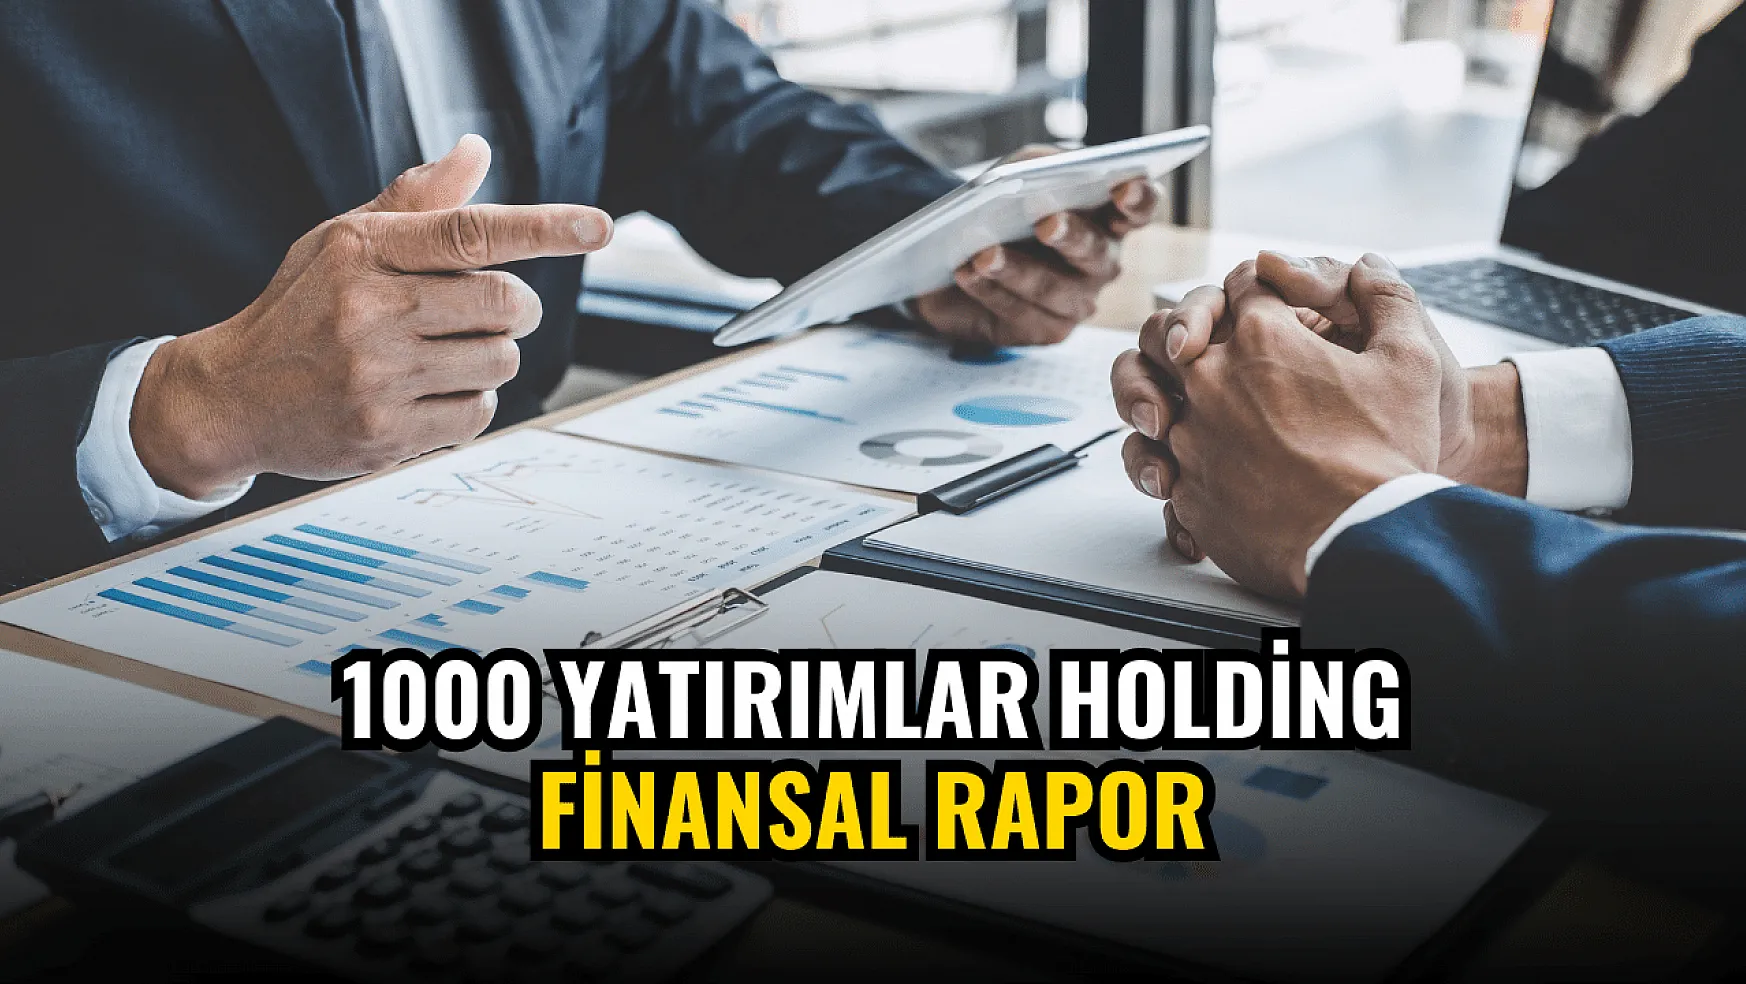 1000 Yatırımlar Holding'in bilançosu açıklandı!